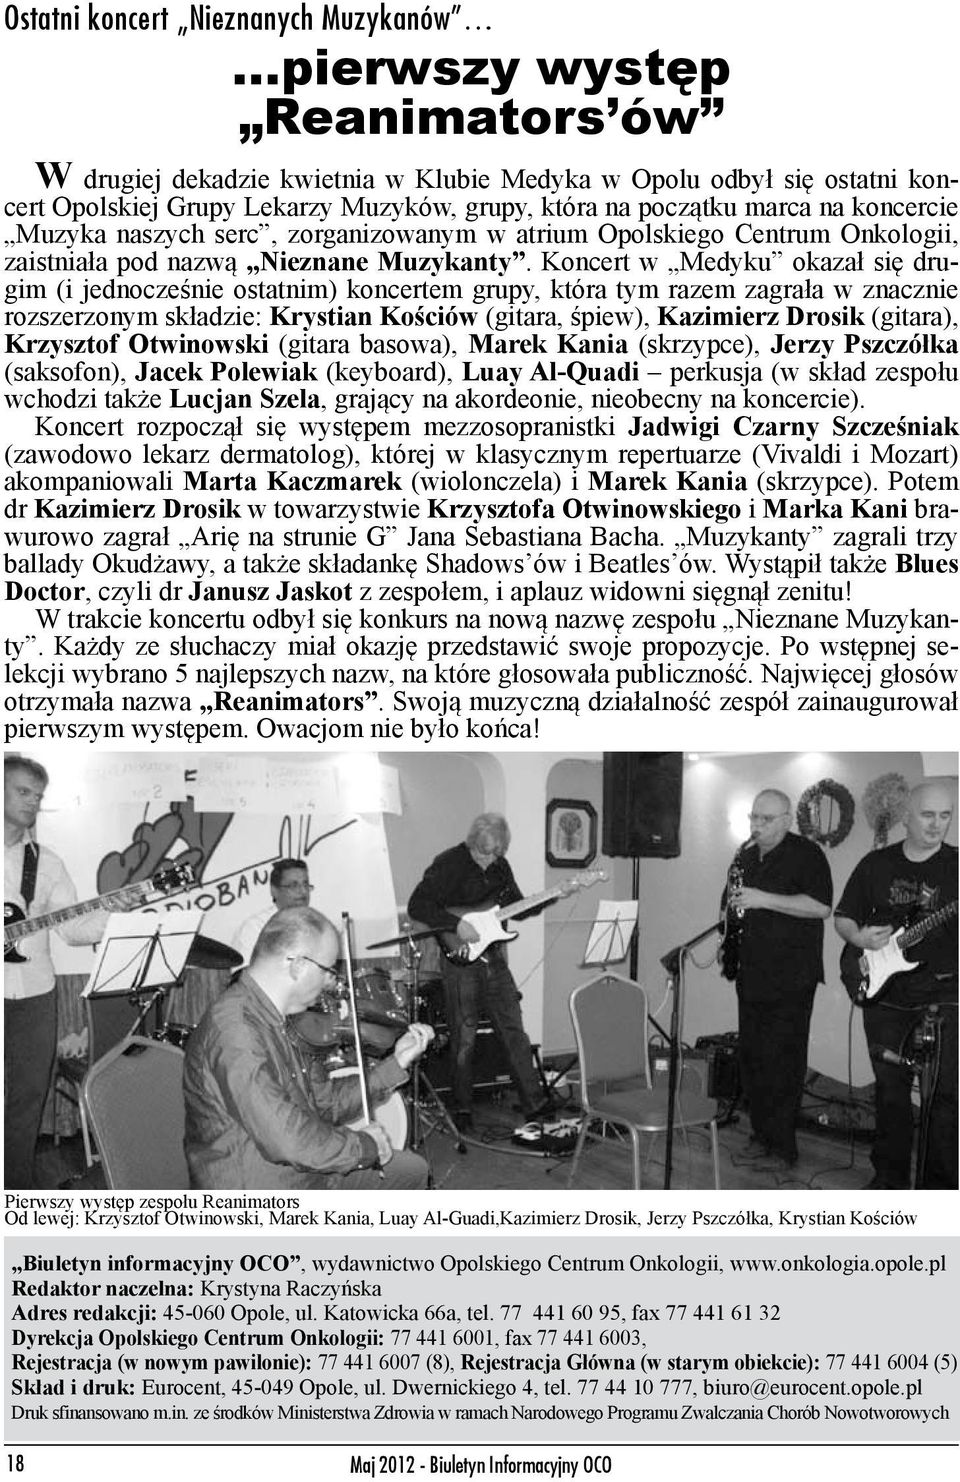 Koncert w Medyku okazał się drugim (i jednocześnie ostatnim) koncertem grupy, która tym razem zagrała w znacznie rozszerzonym składzie: Krystian Kościów (gitara, śpiew), Kazimierz Drosik (gitara),